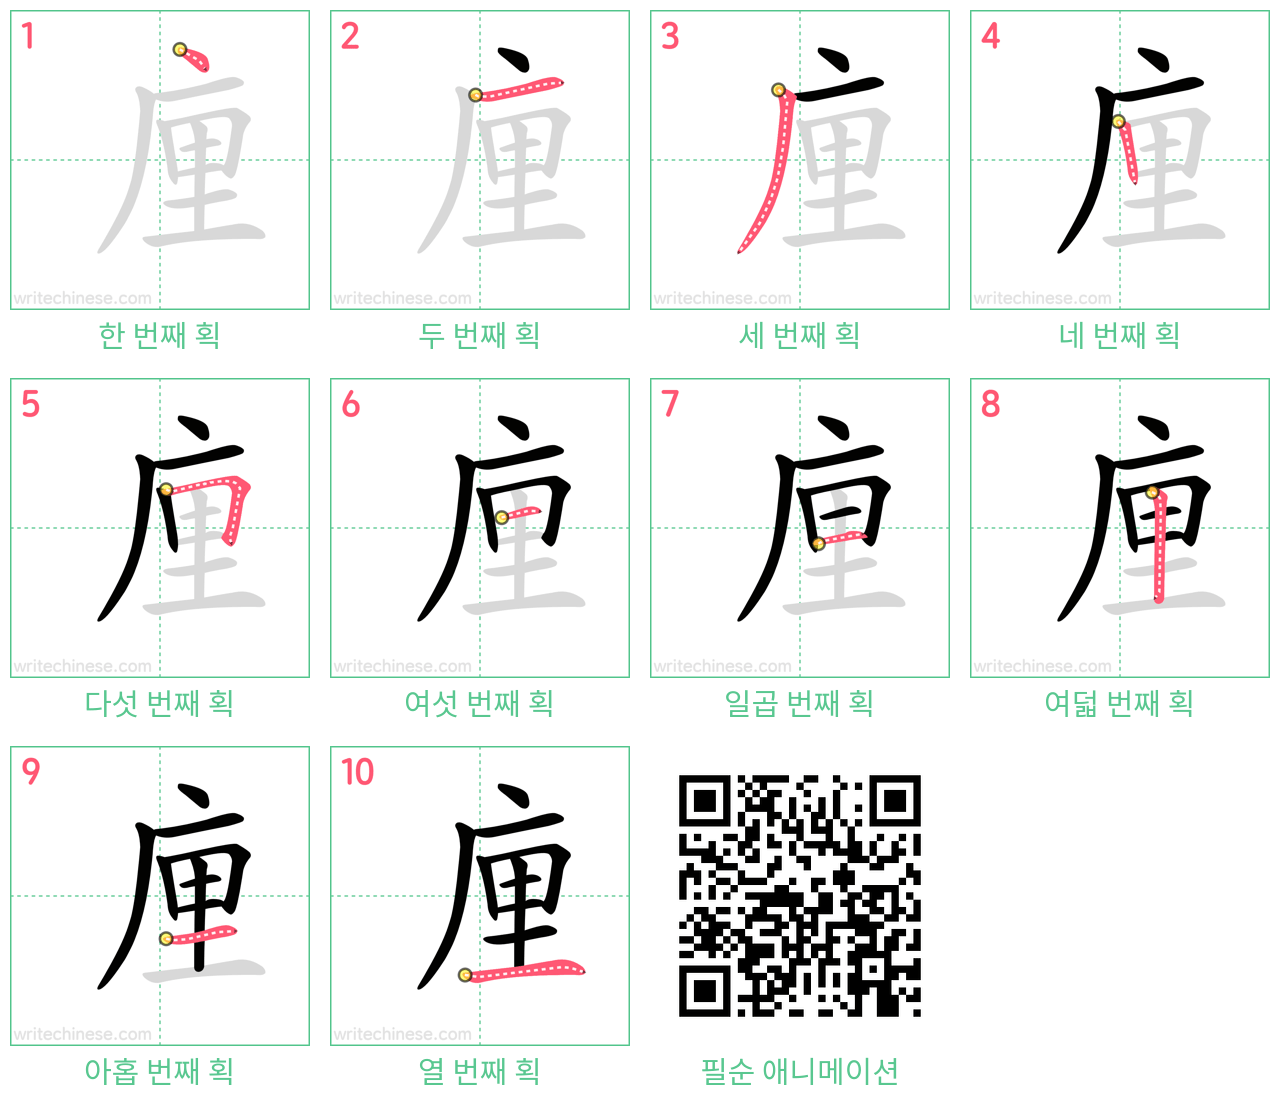 㢆 step-by-step stroke order diagrams